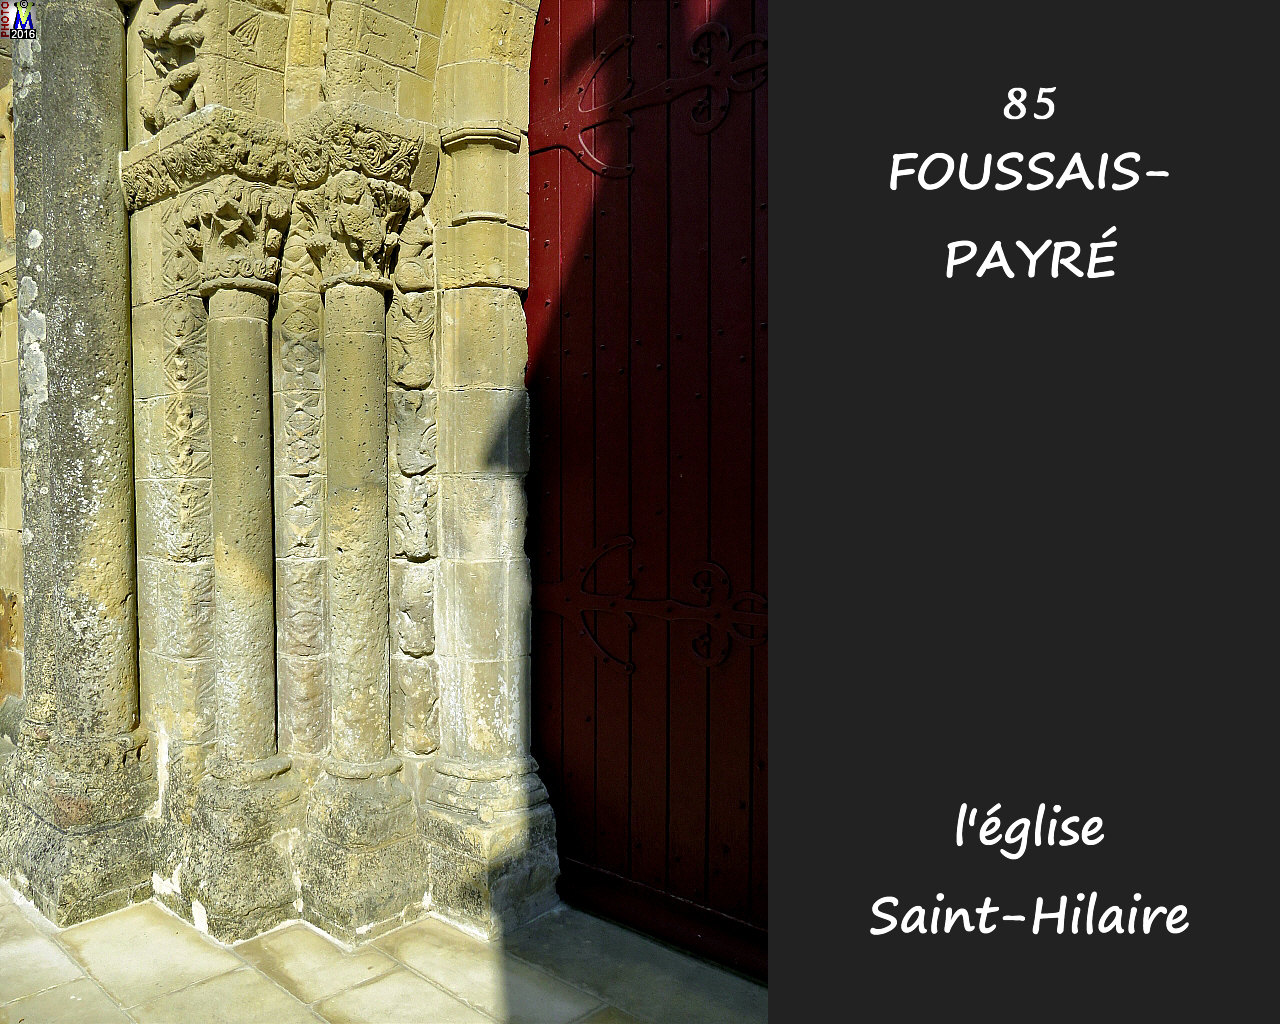 85FOUSSAIS-PAYRE_eglise_1022.jpg